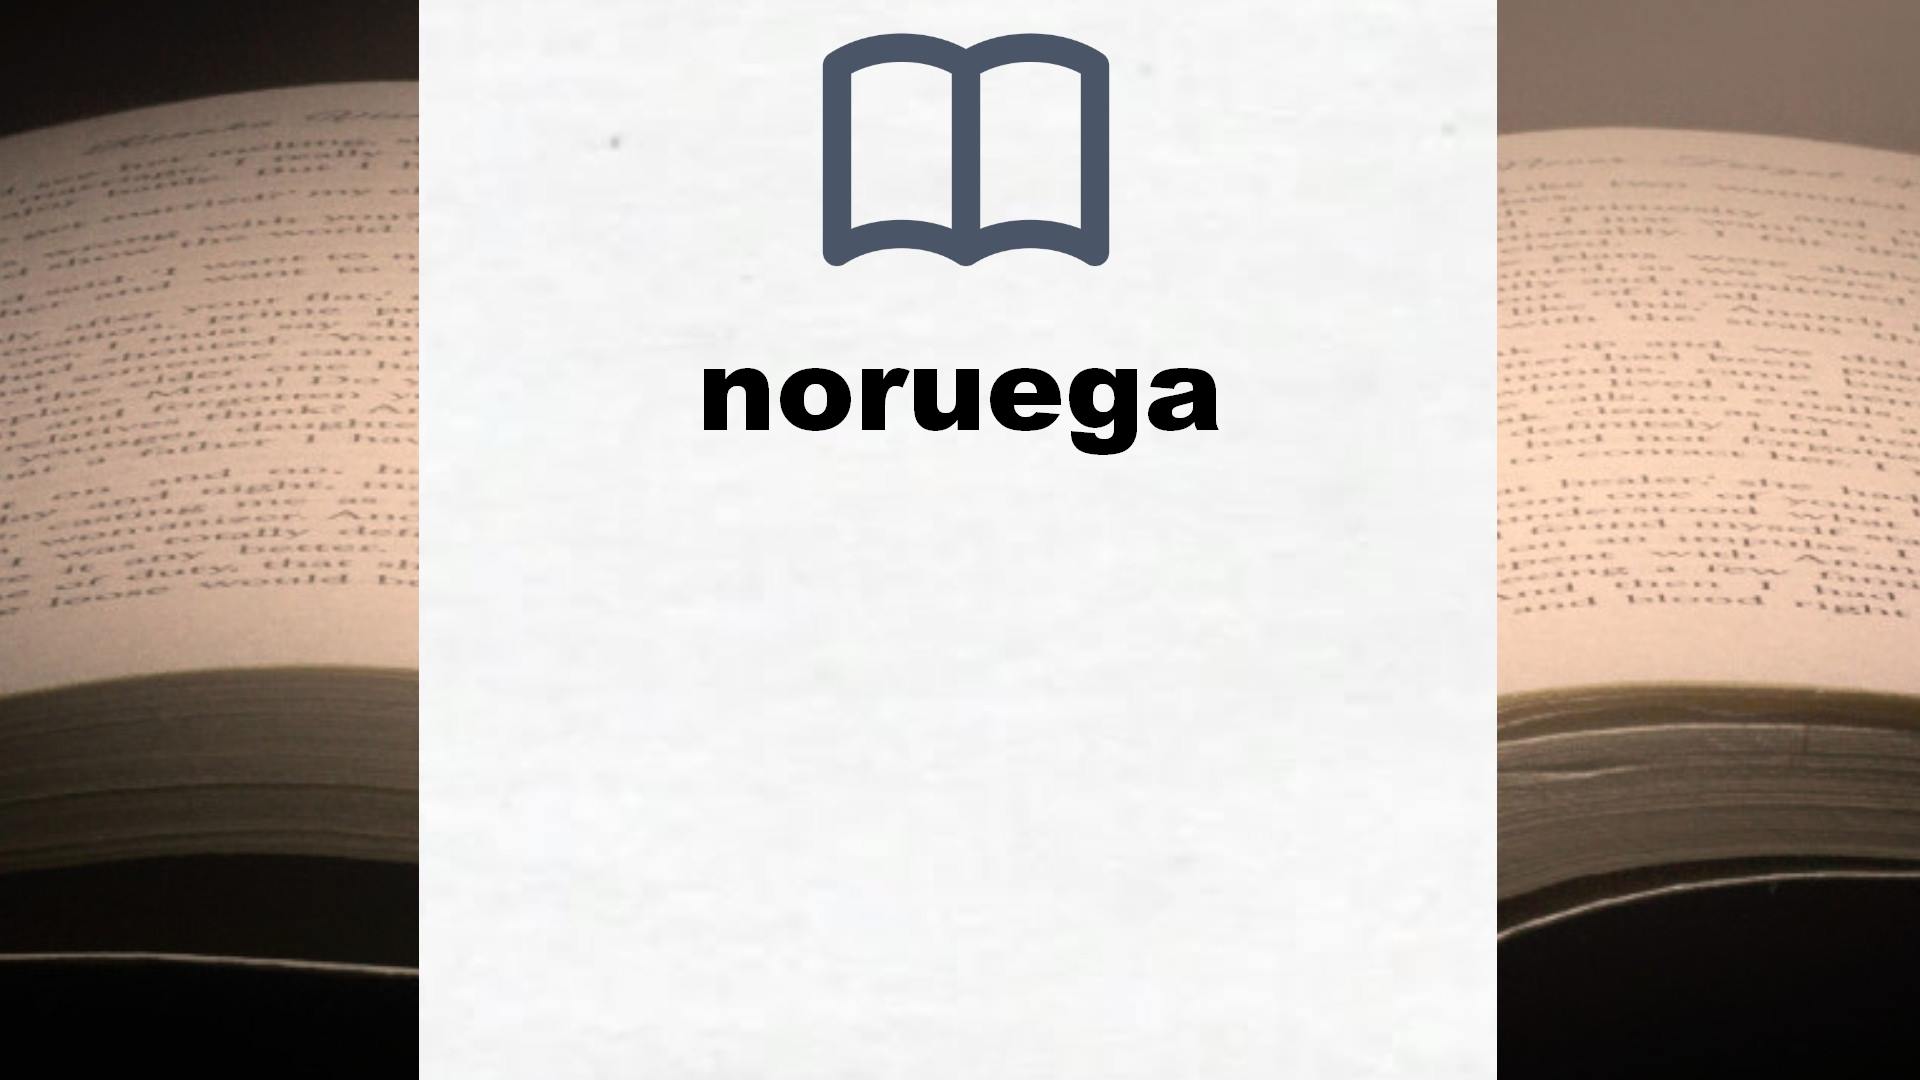 Libros sobre noruega